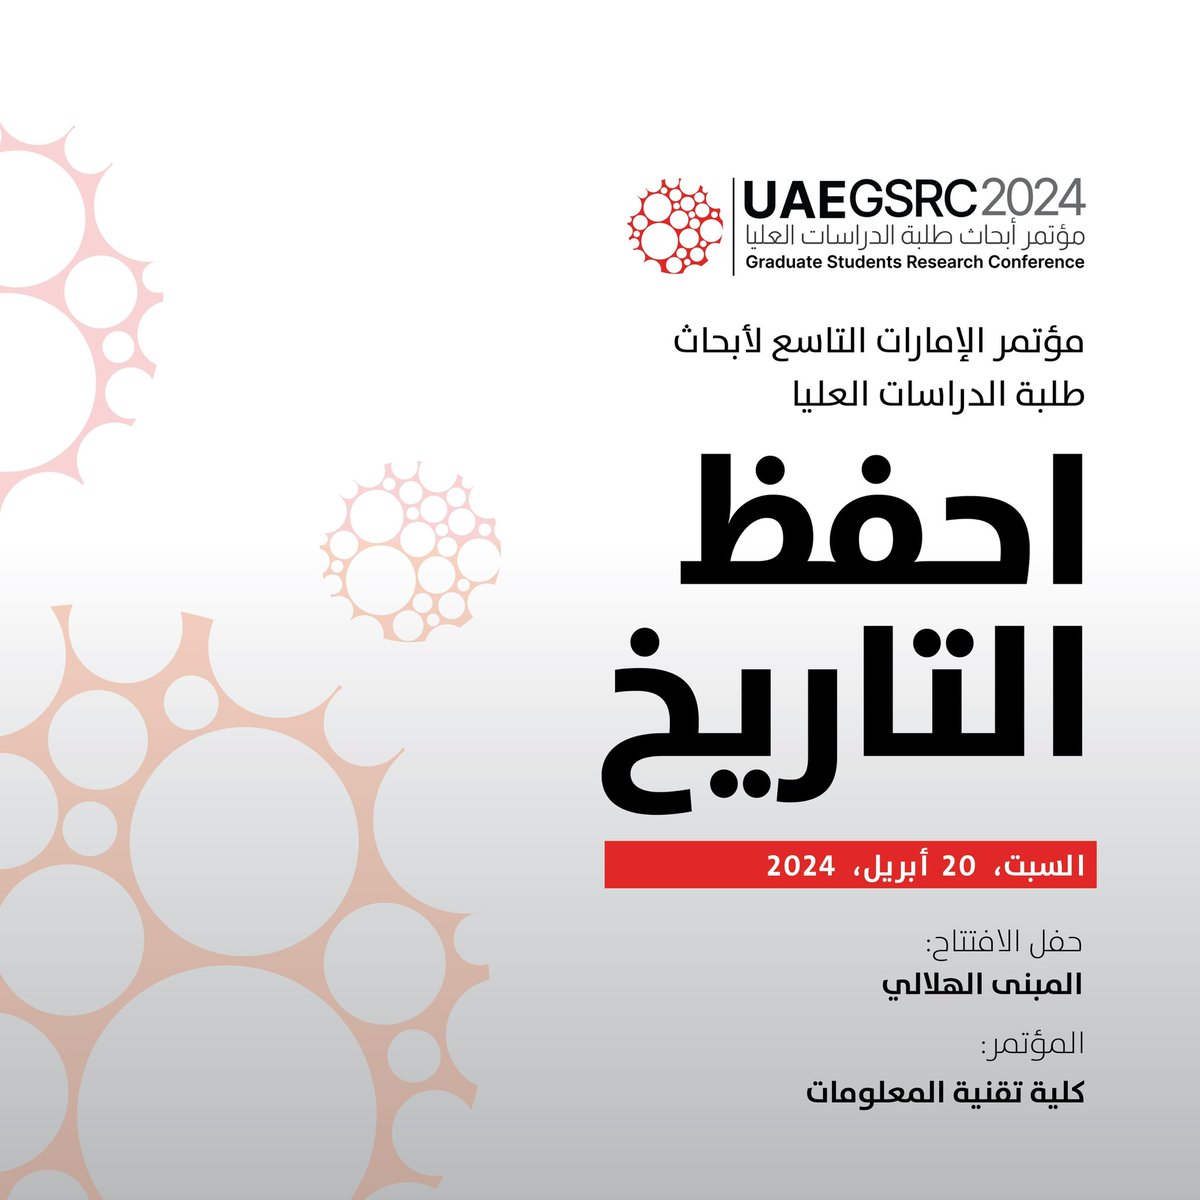 انضم إلينا في مؤتمر الإمارات التاسع لأبحاث طلبة الدراسات العليا في 20 أبريل 2024، في جامعة الإمارات العربية المتحدة.

#UAEGSRC2024